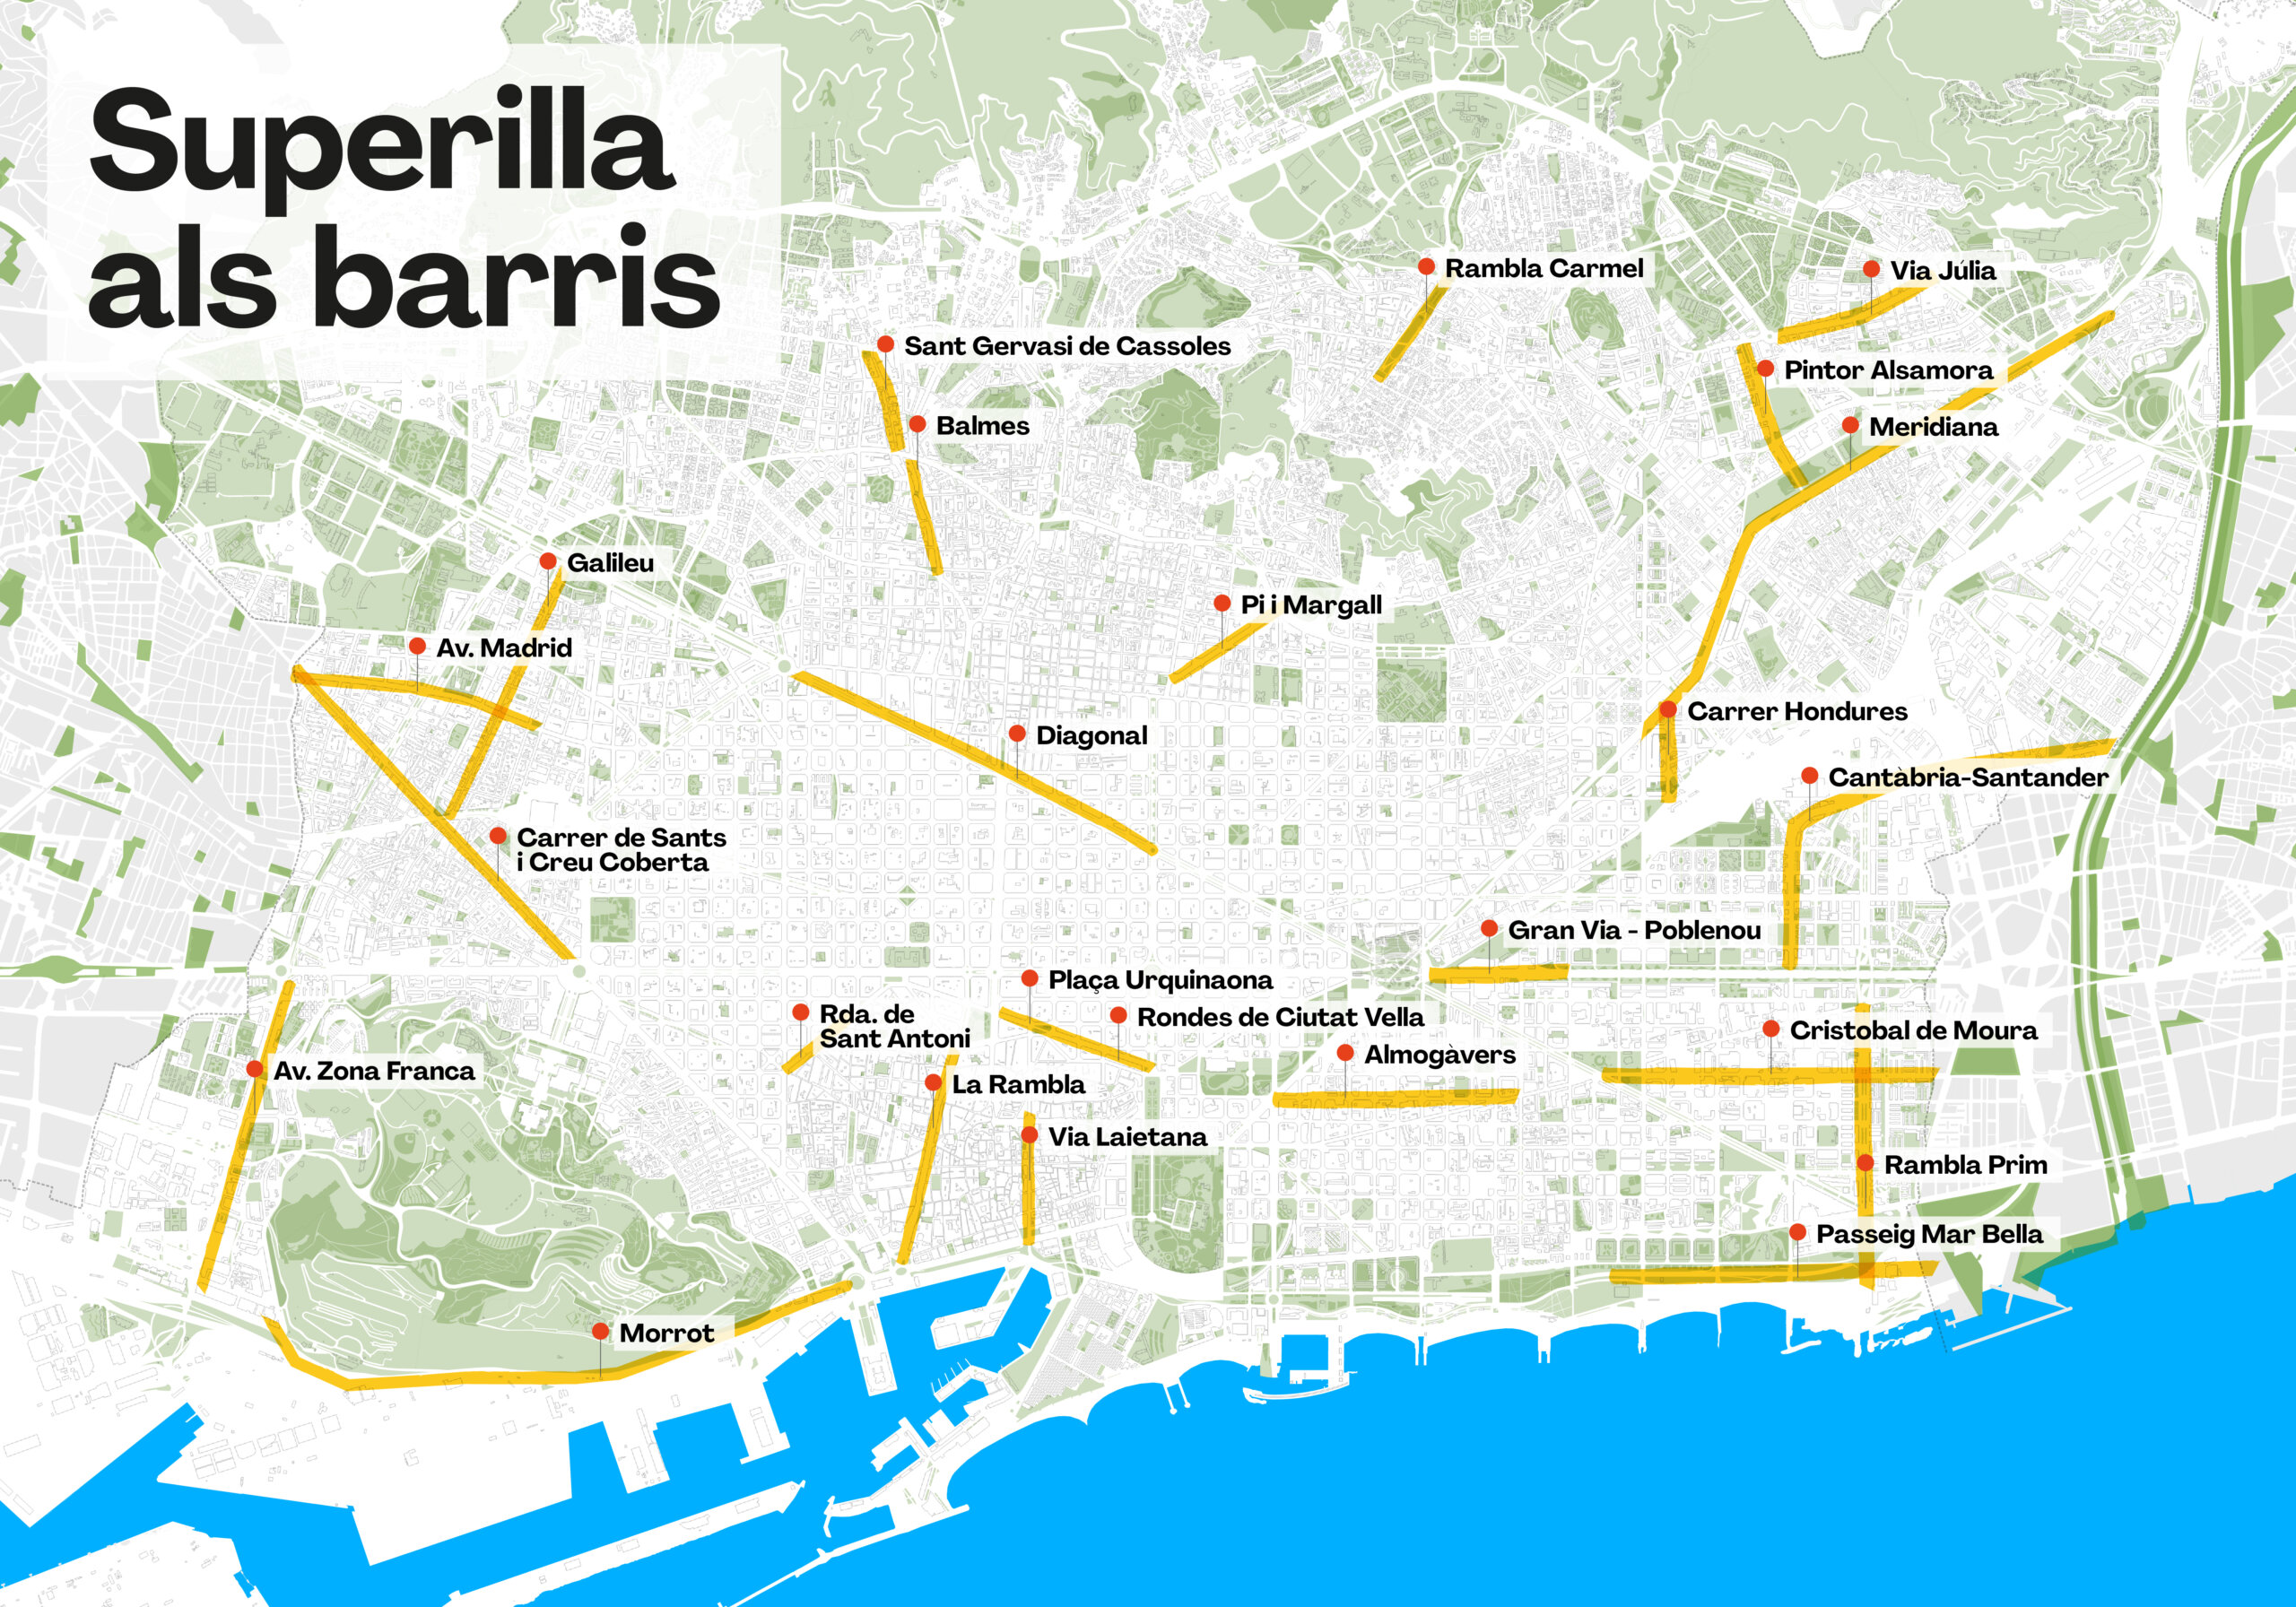 Ada Colau propone pacificaciones en más de 40 barrios, aquí el mapa con las propuestas.